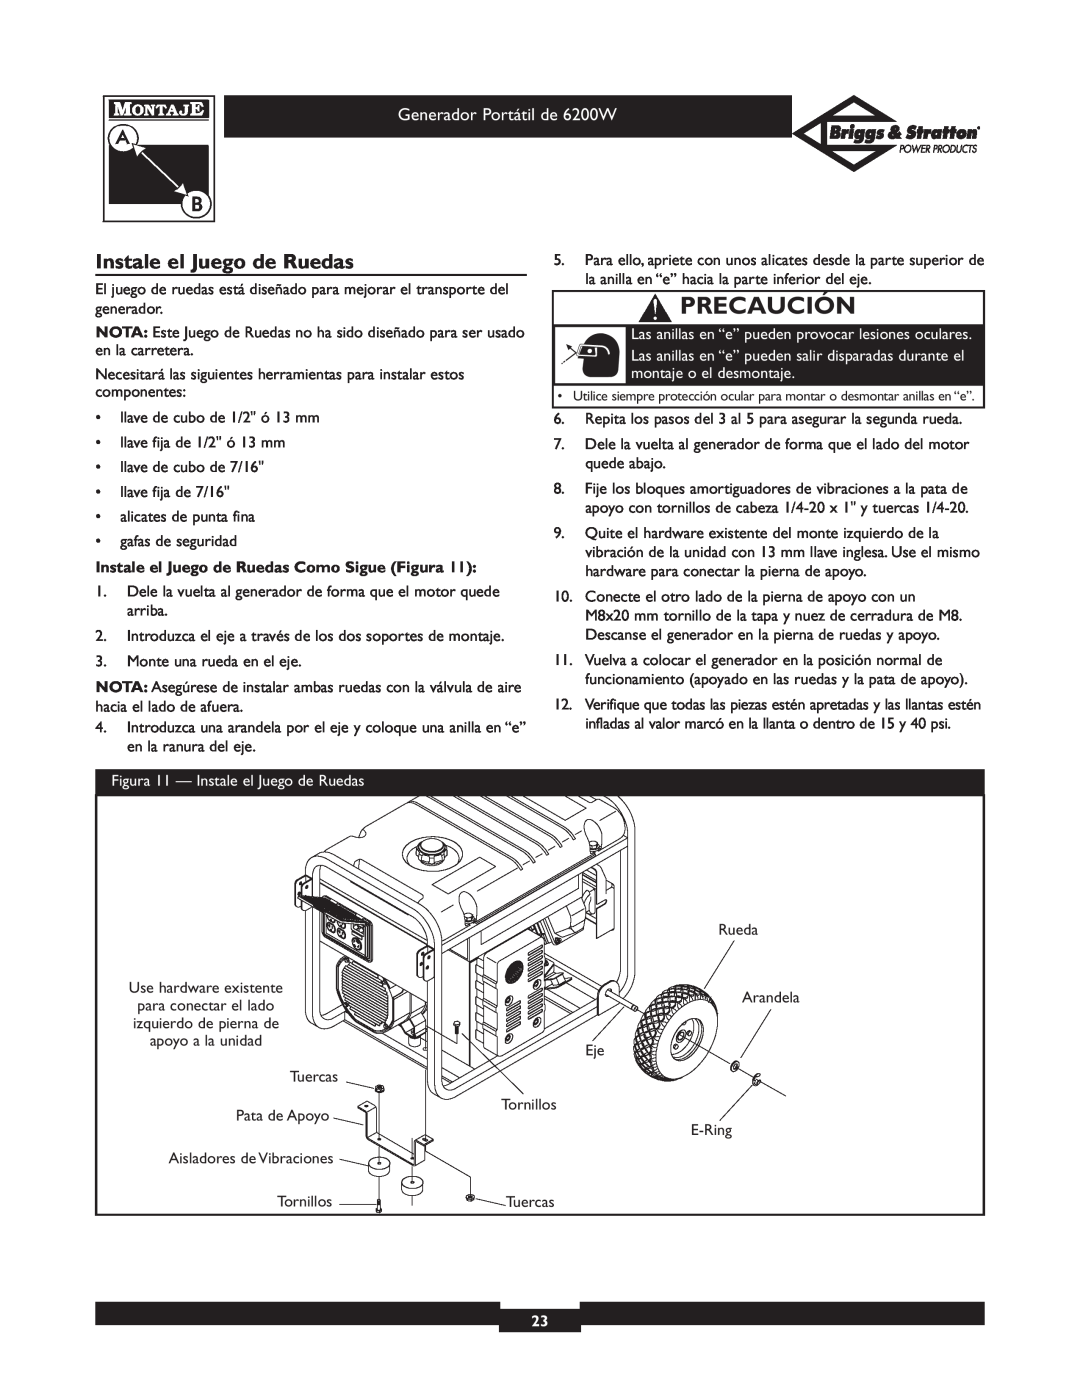 Briggs & Stratton 30211 operating instructions Instale el Juego de Ruedas, Precaución, Generador Portátil de 6200W 